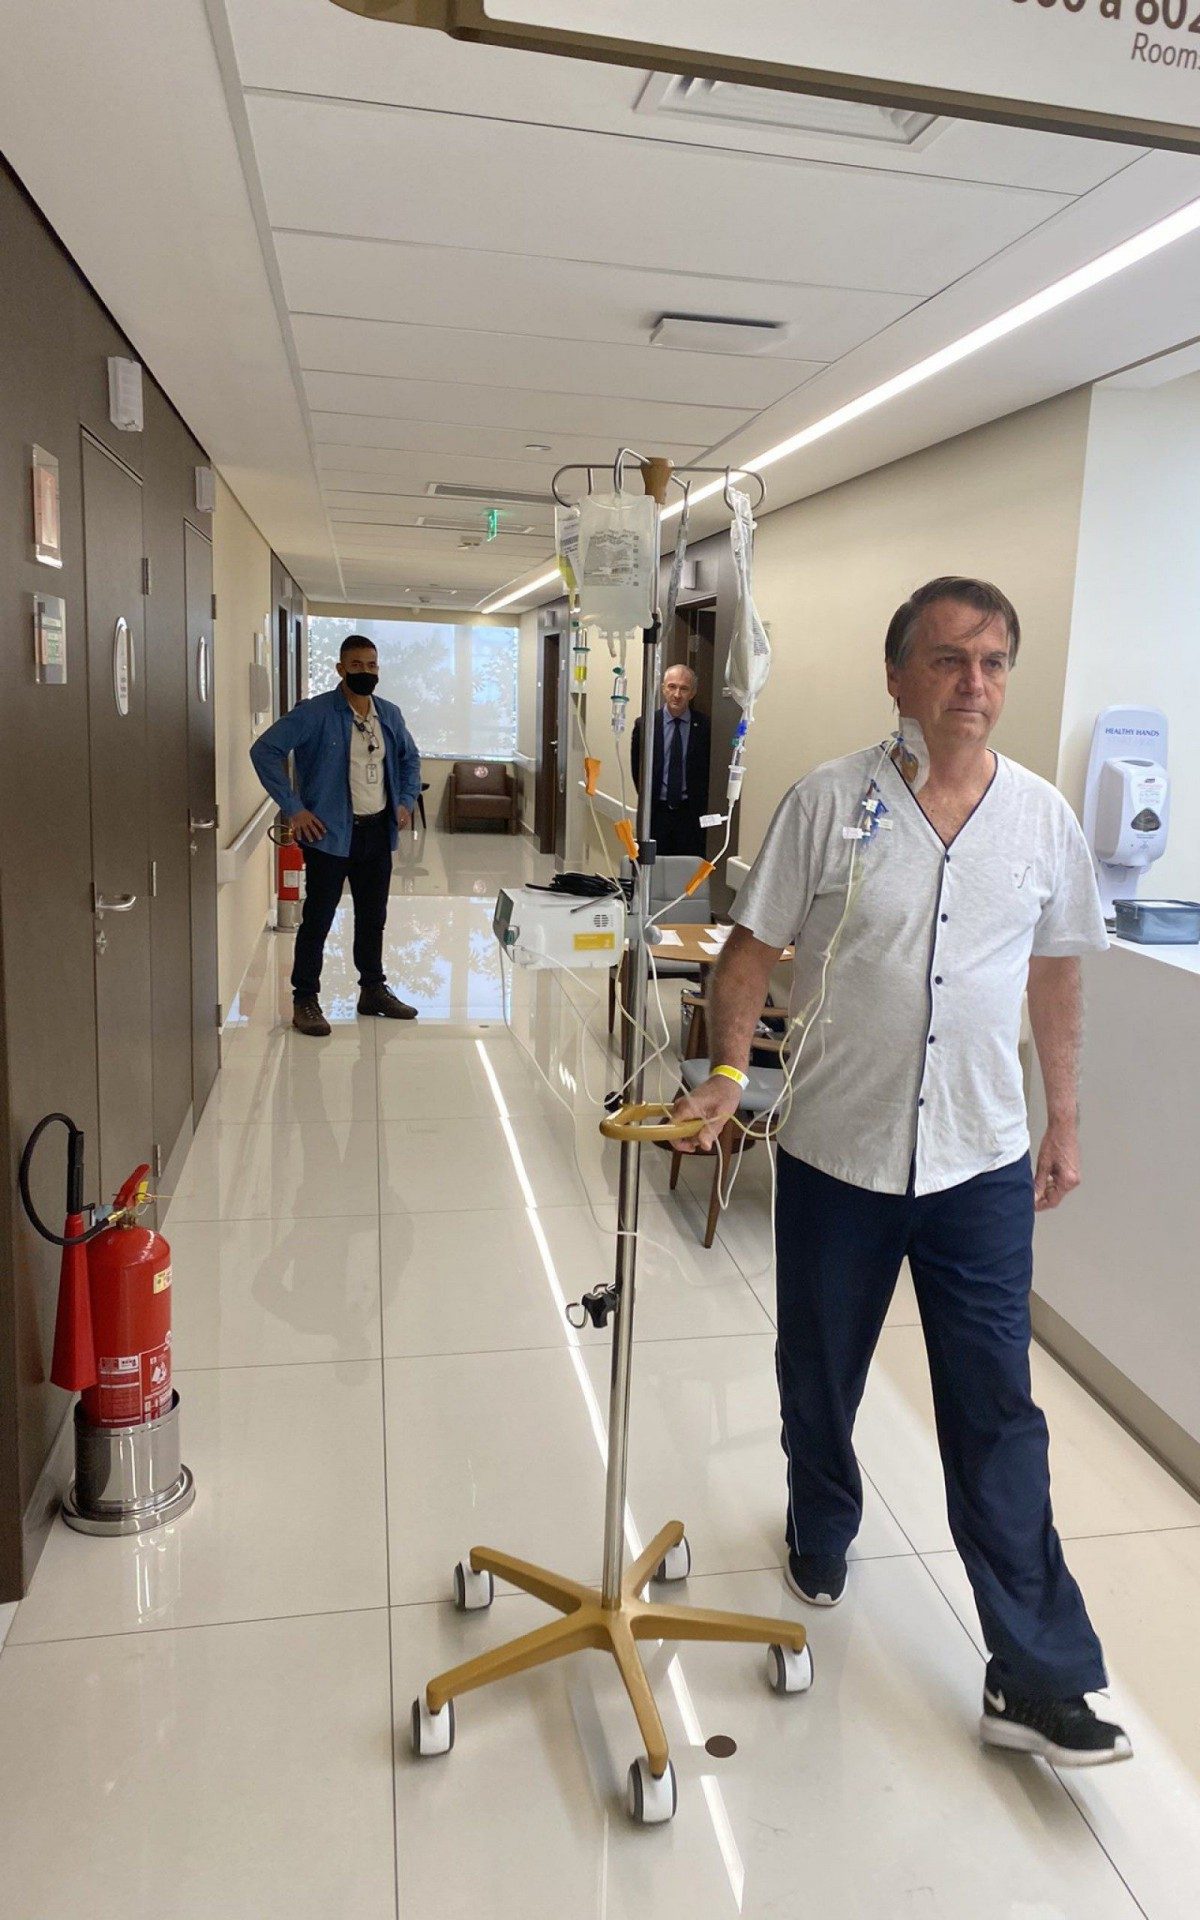 Presidente publicou uma foto dele caminhando no corredor do hospital com o suporte para soro  - Reprodução 